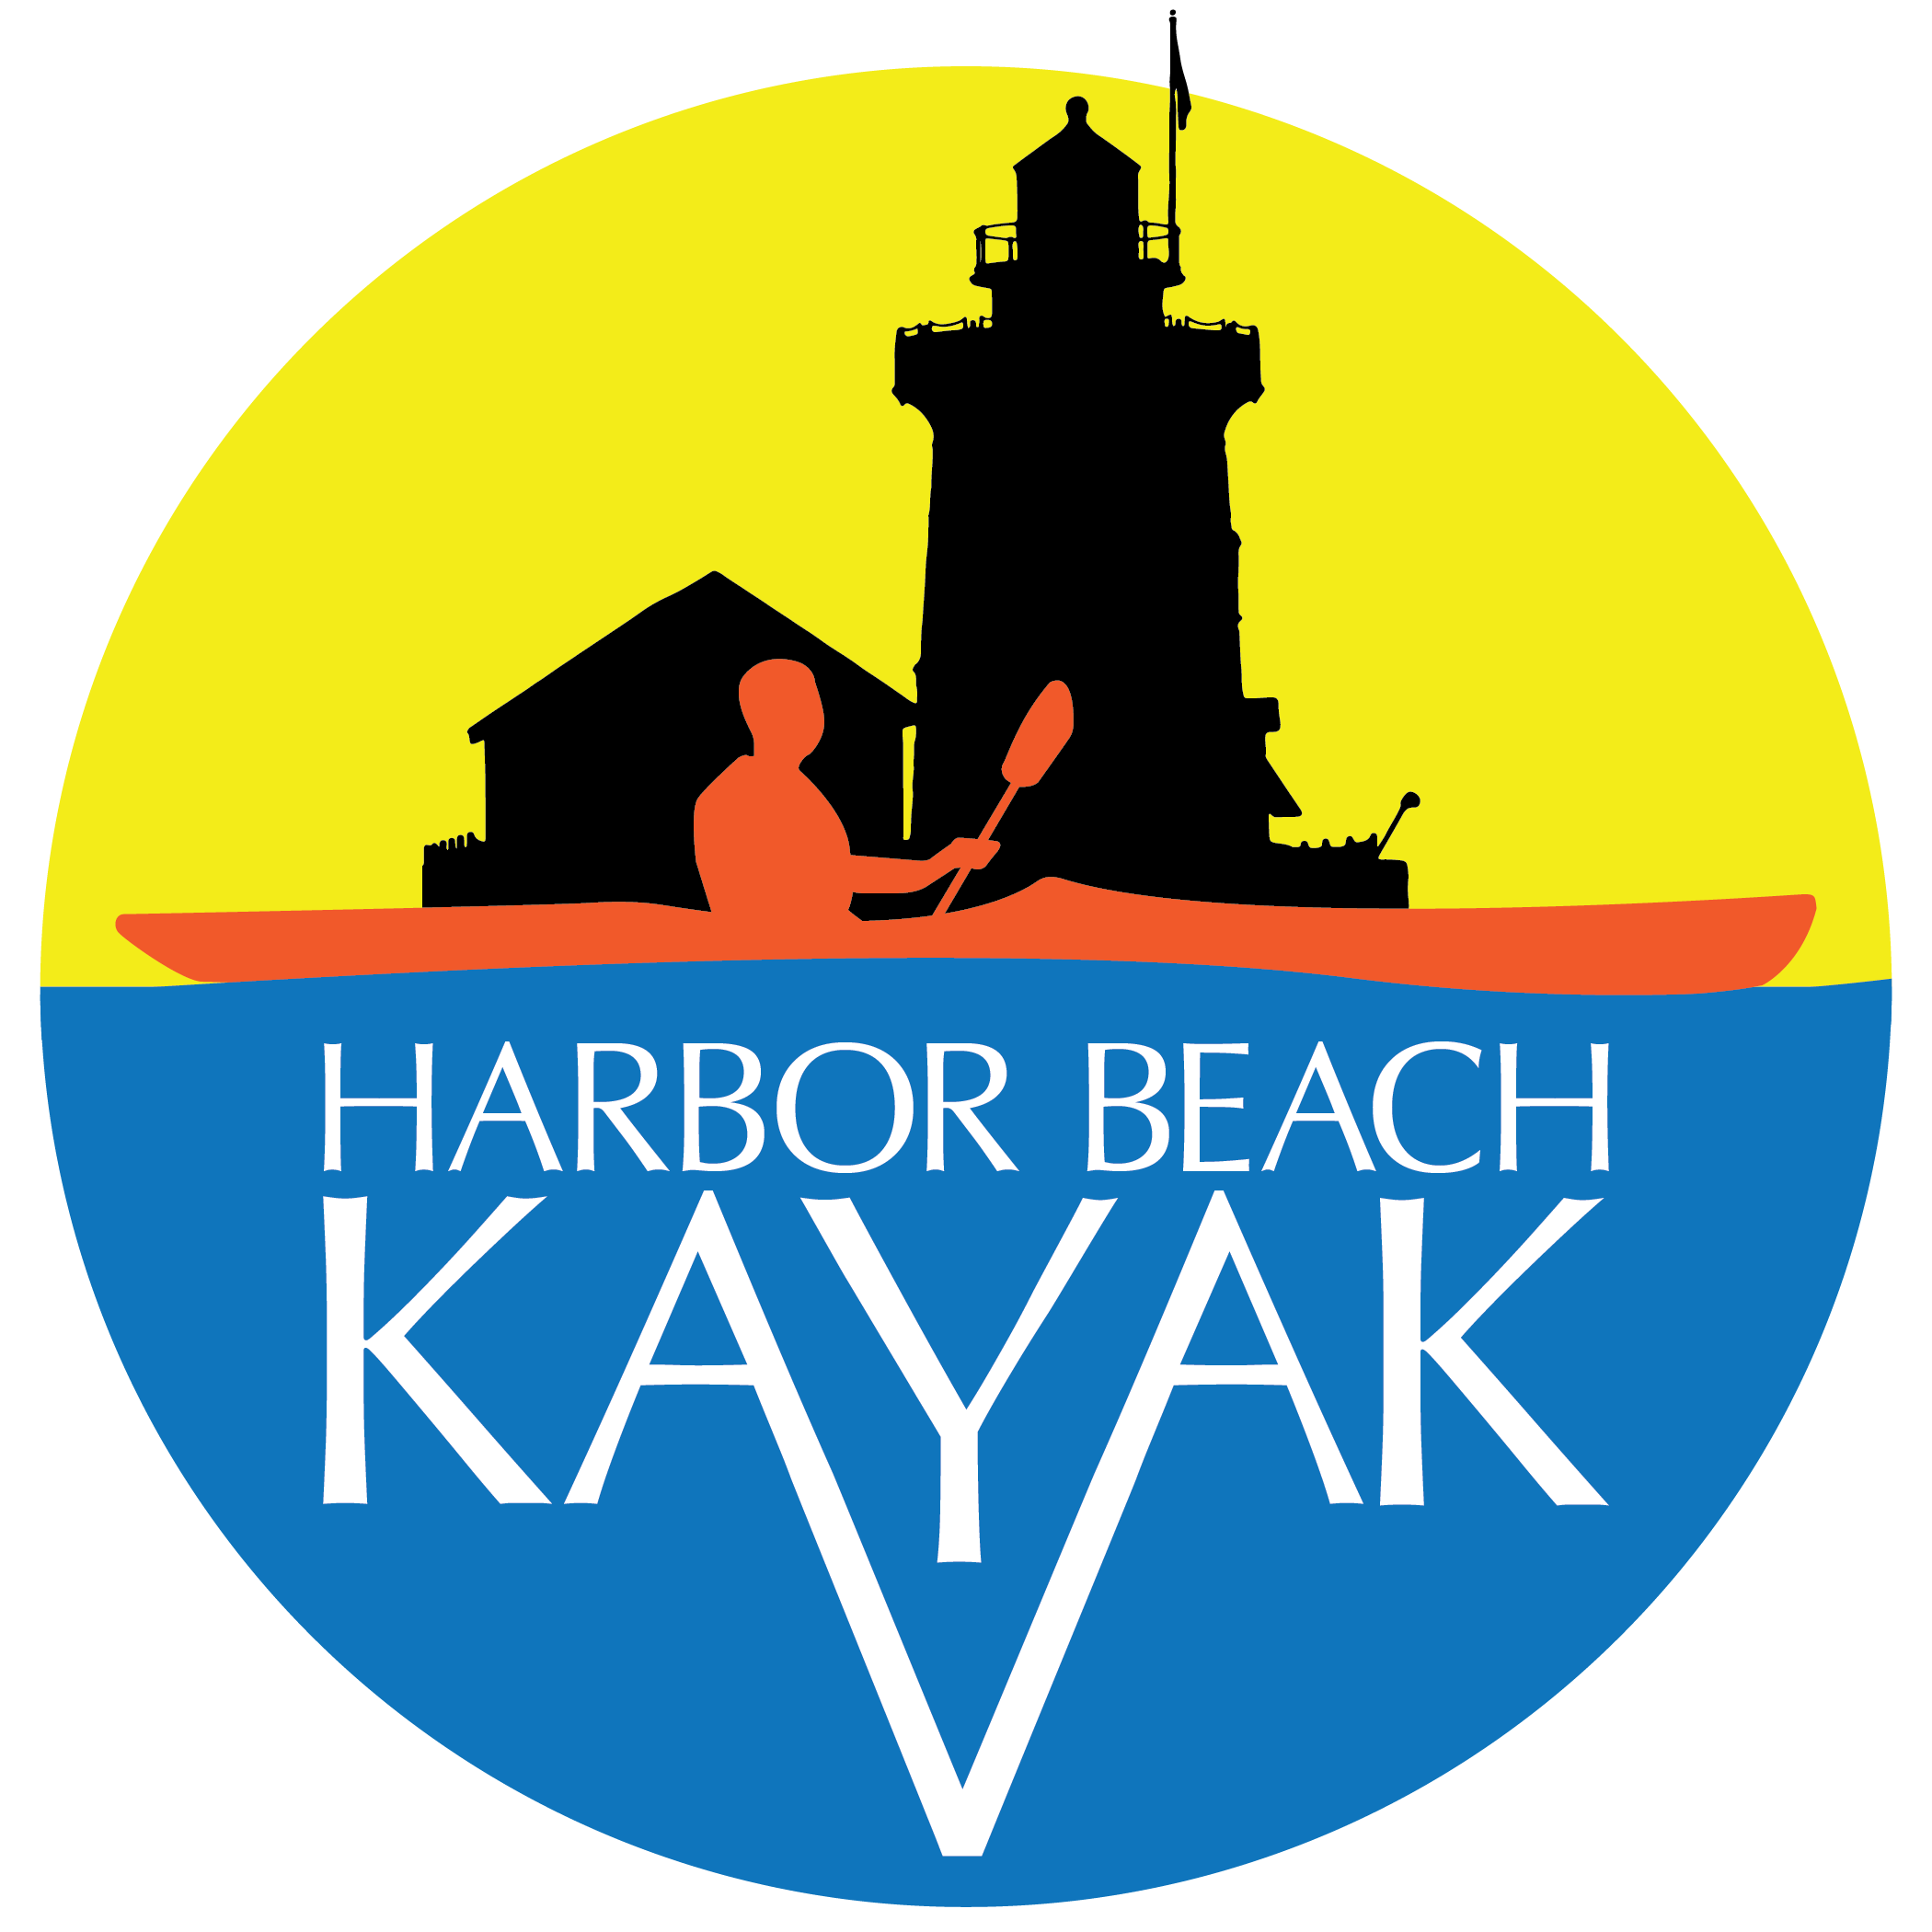 Harbor Beach Kayak (Copy) (Copy) (Copy) (Copy) (Copy)